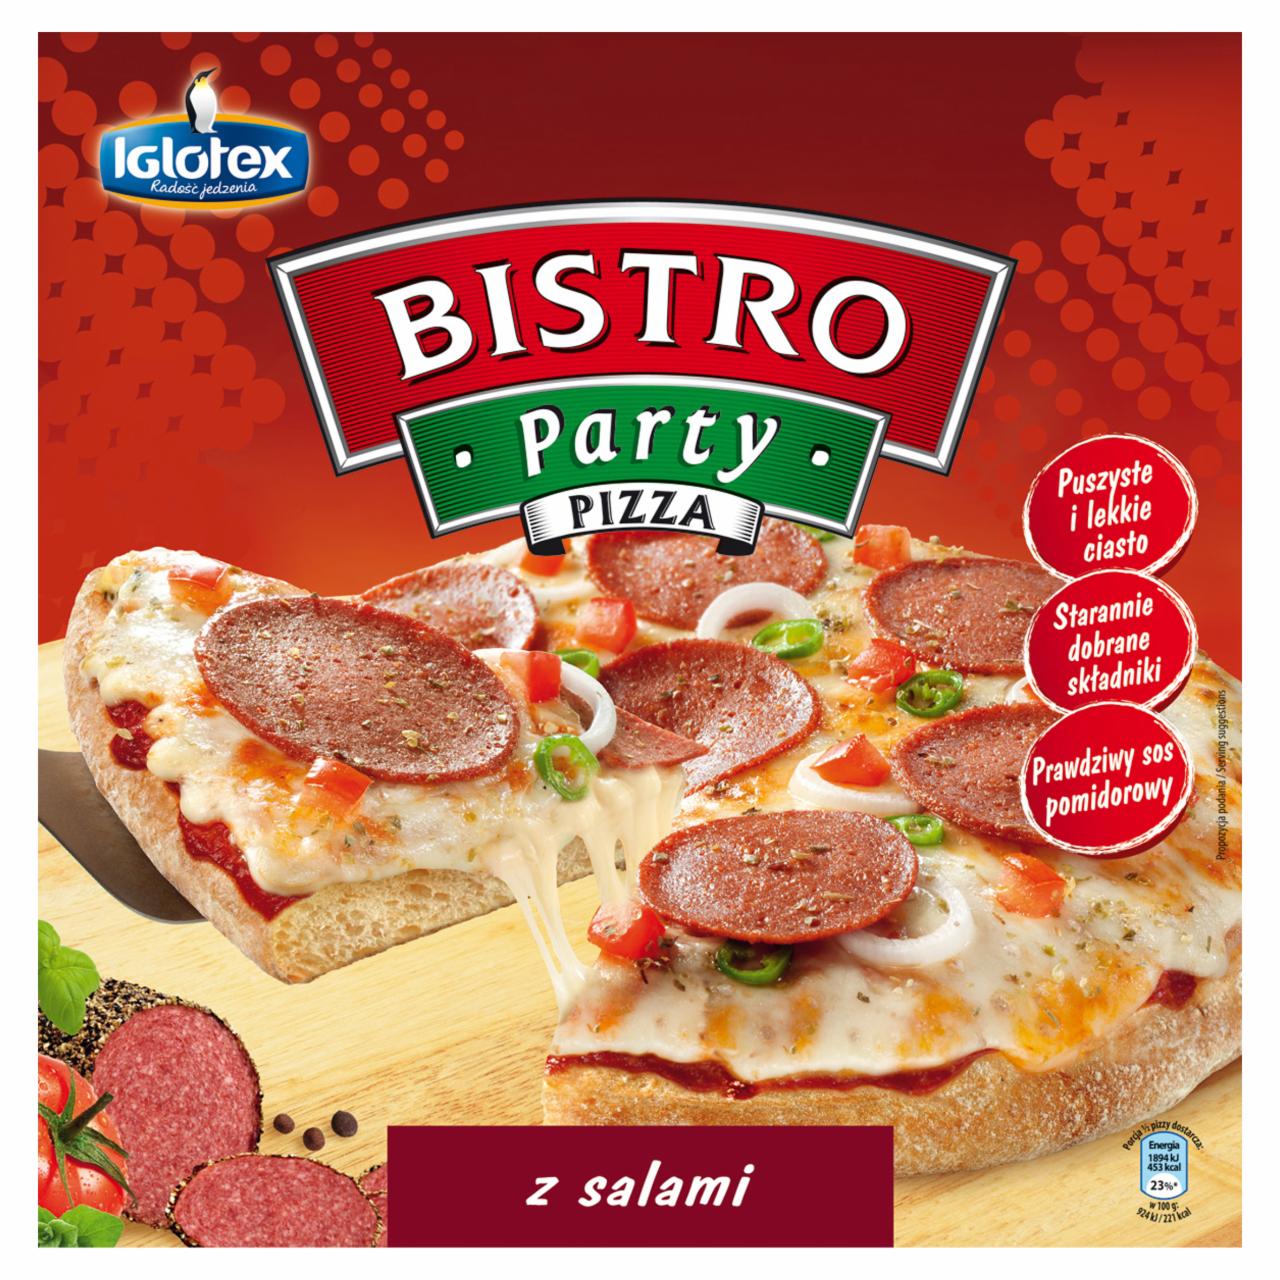 Zdjęcia - Bistro Party Pizza z salami 410 g